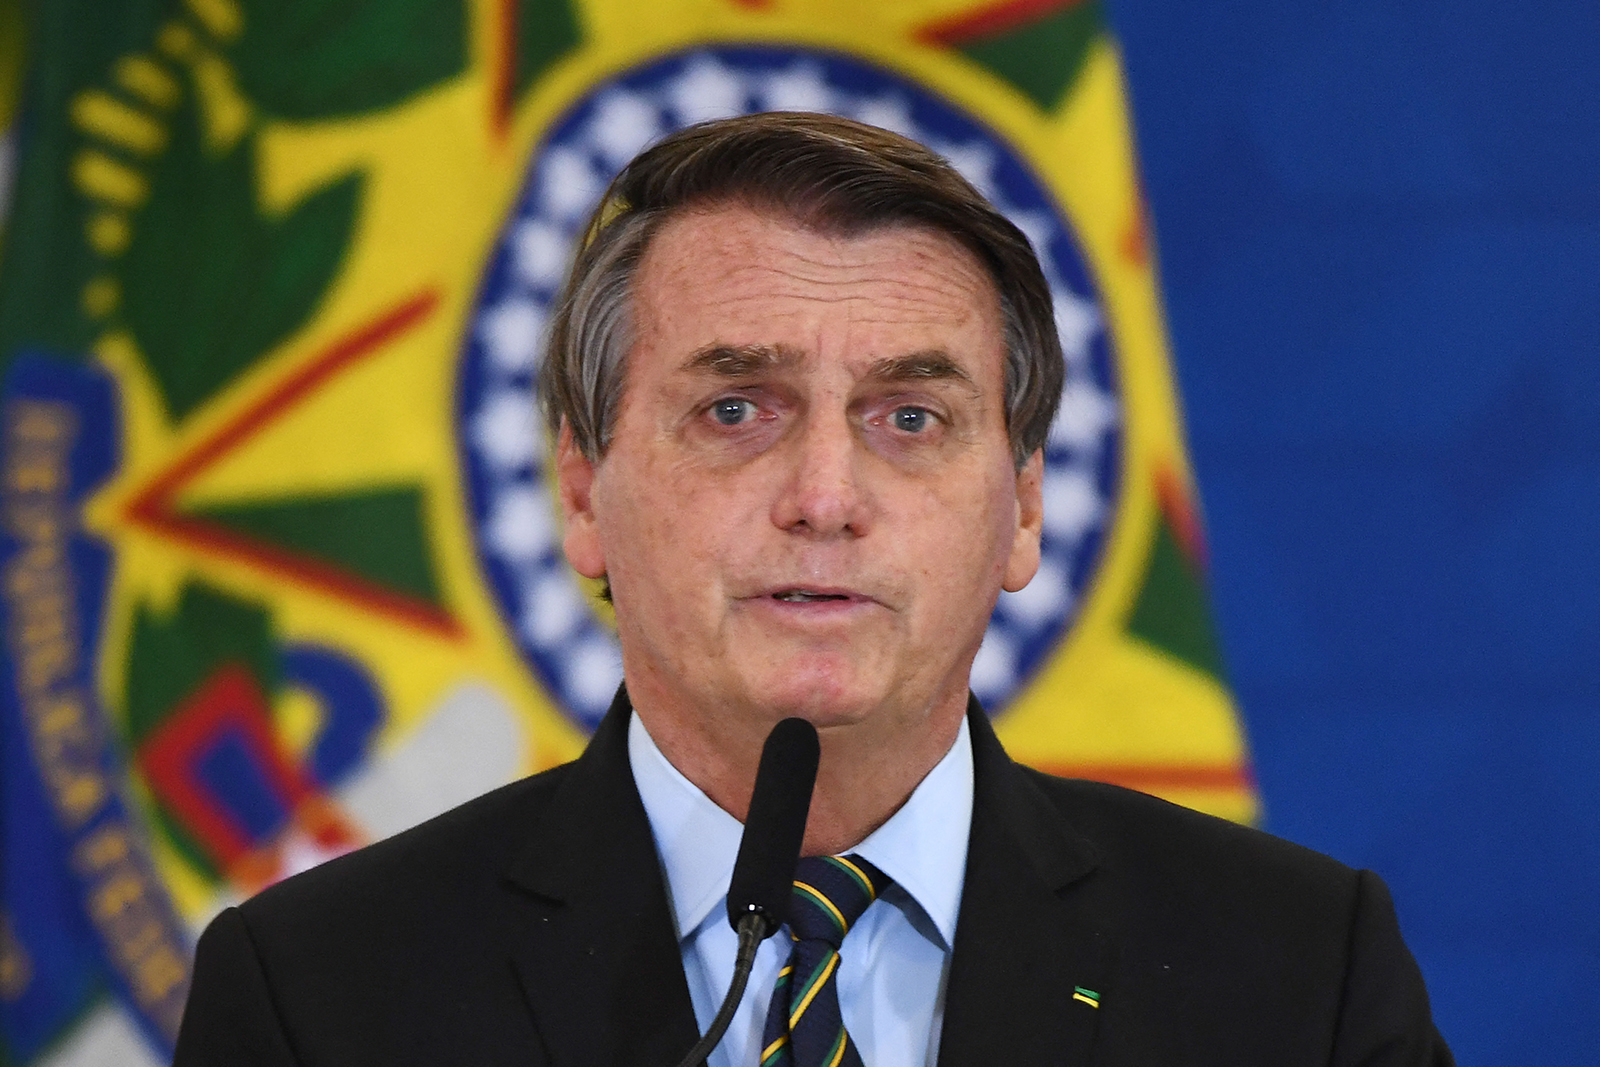 Brazilian President Jair Bolsonaro speaks at Planalto Palace in Brasilia, Brazil, on March 25.